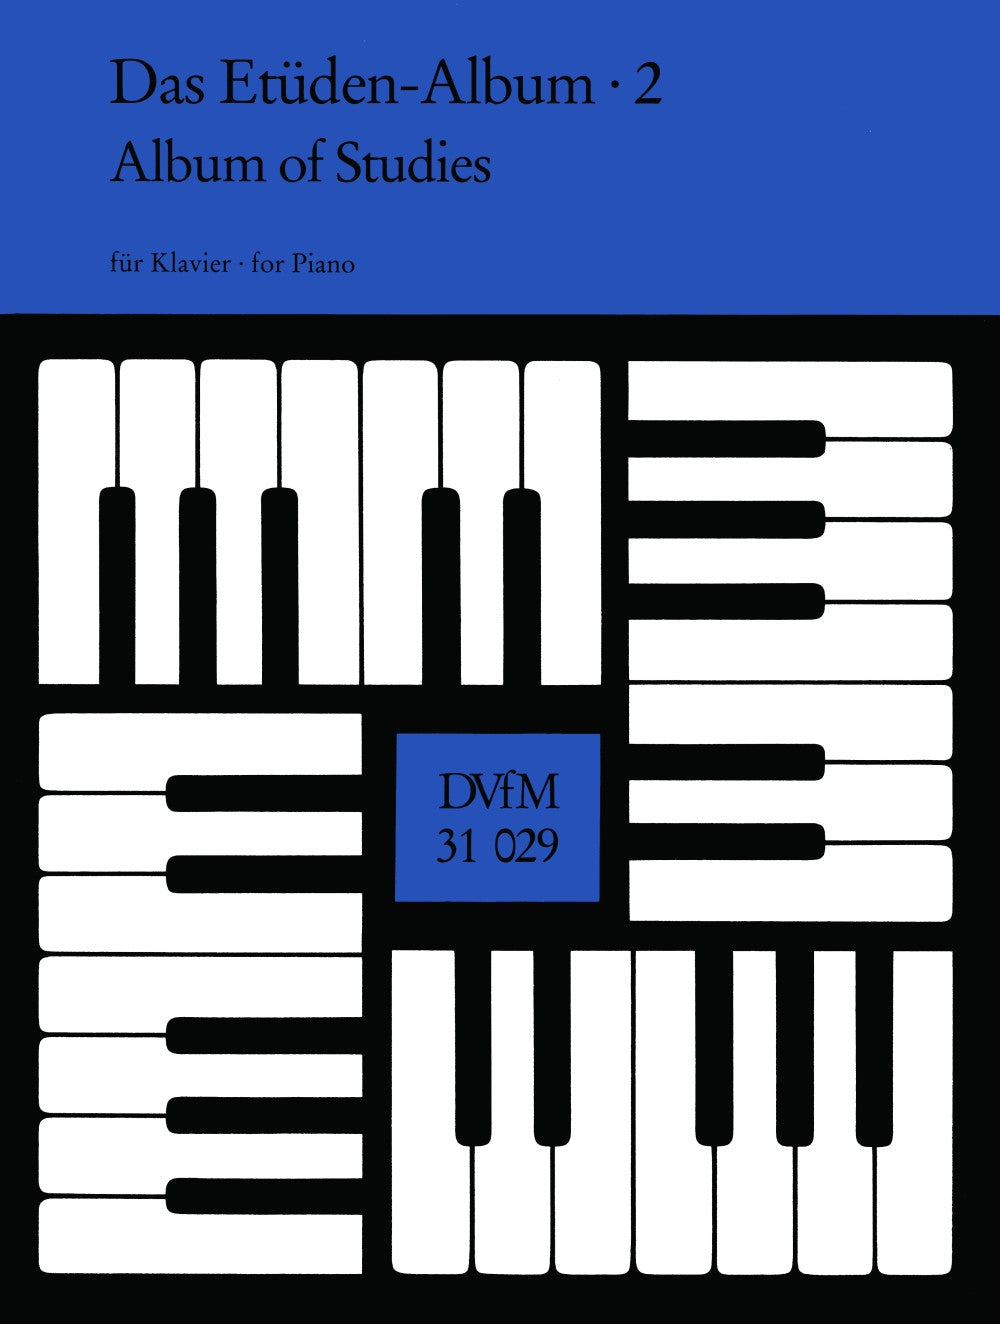 Album of Piano Studies - Book 2